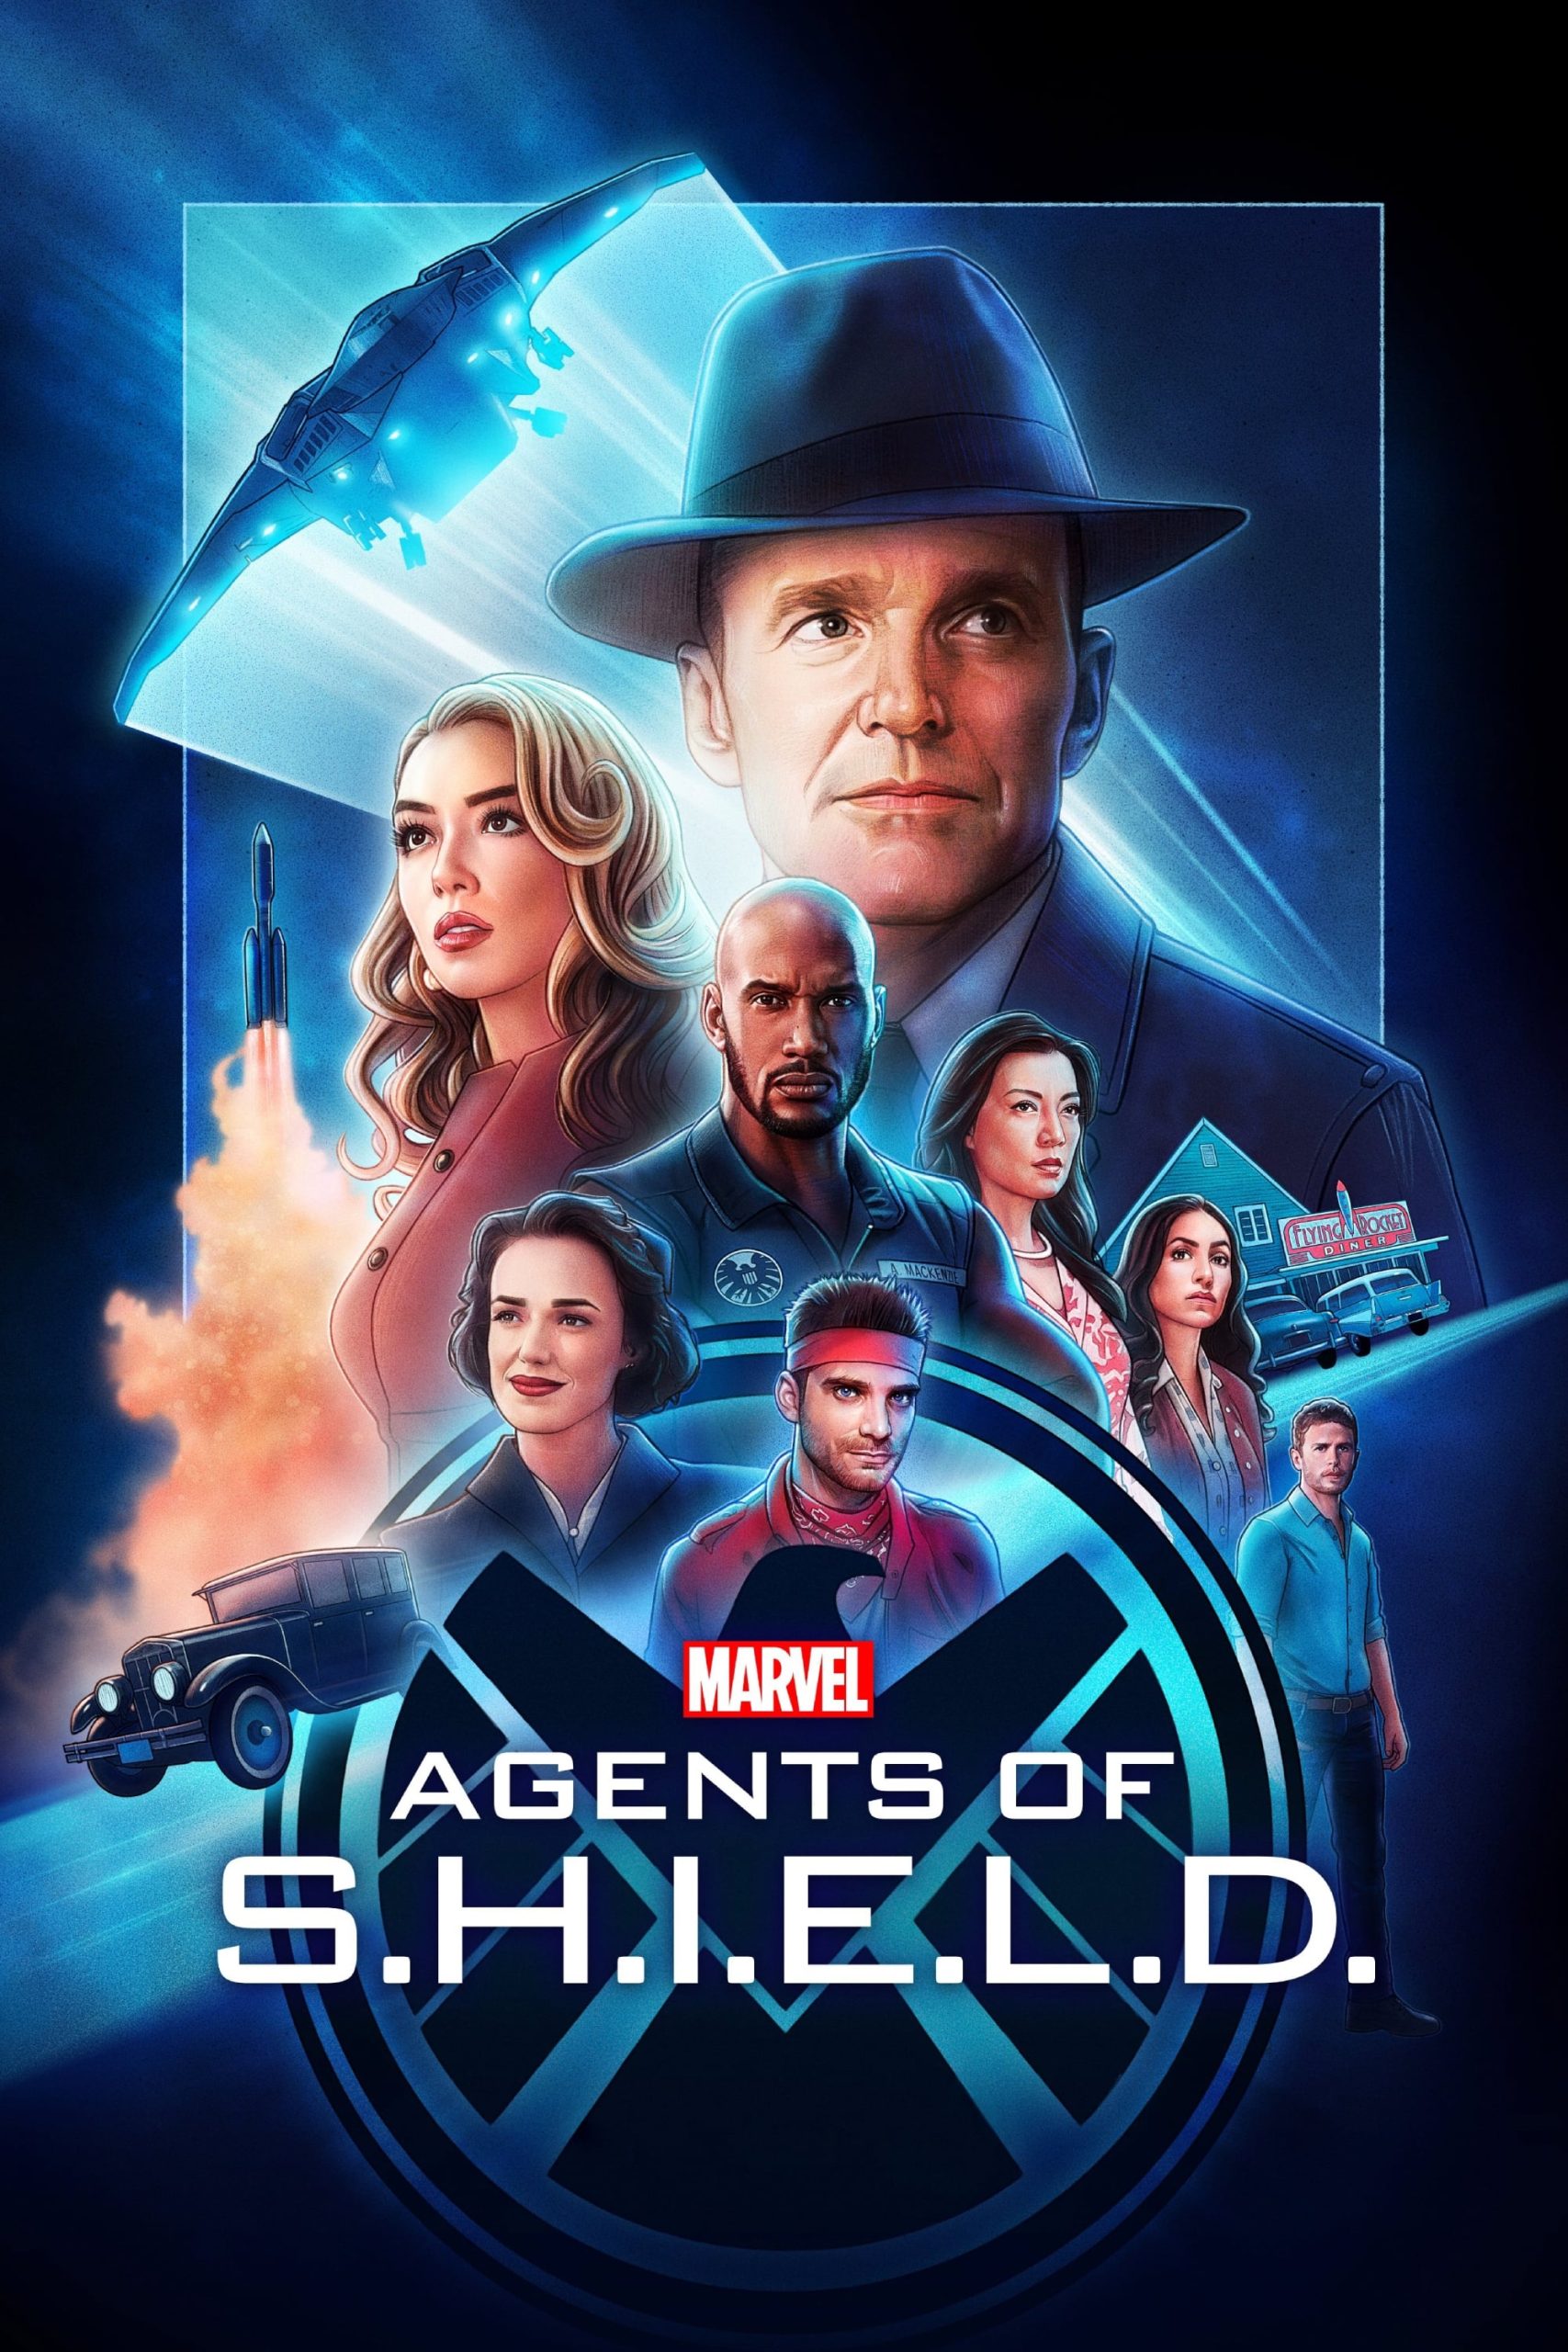 Marvel s Agents of S.H.I.E.L.D. (2013) ชี.ล.ด์. ทีมมหากาฬอเวนเจอร์ส Season 1-7 (จบ)